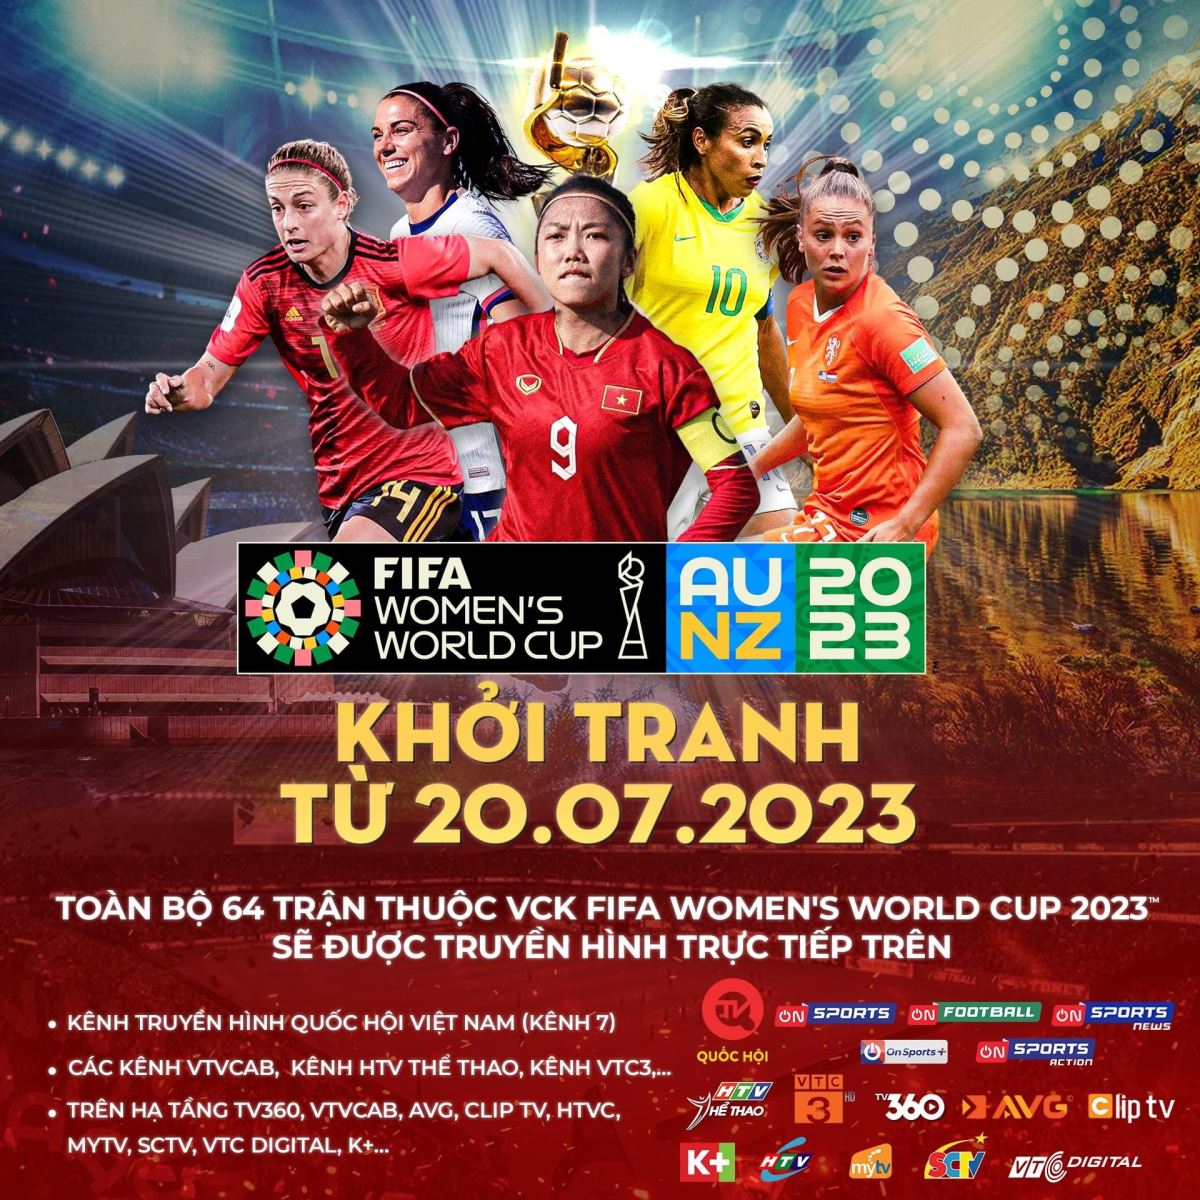 Xem trực tiếp vòng chung kết FIFA World Cup nữ 2023 trên kênh truyền